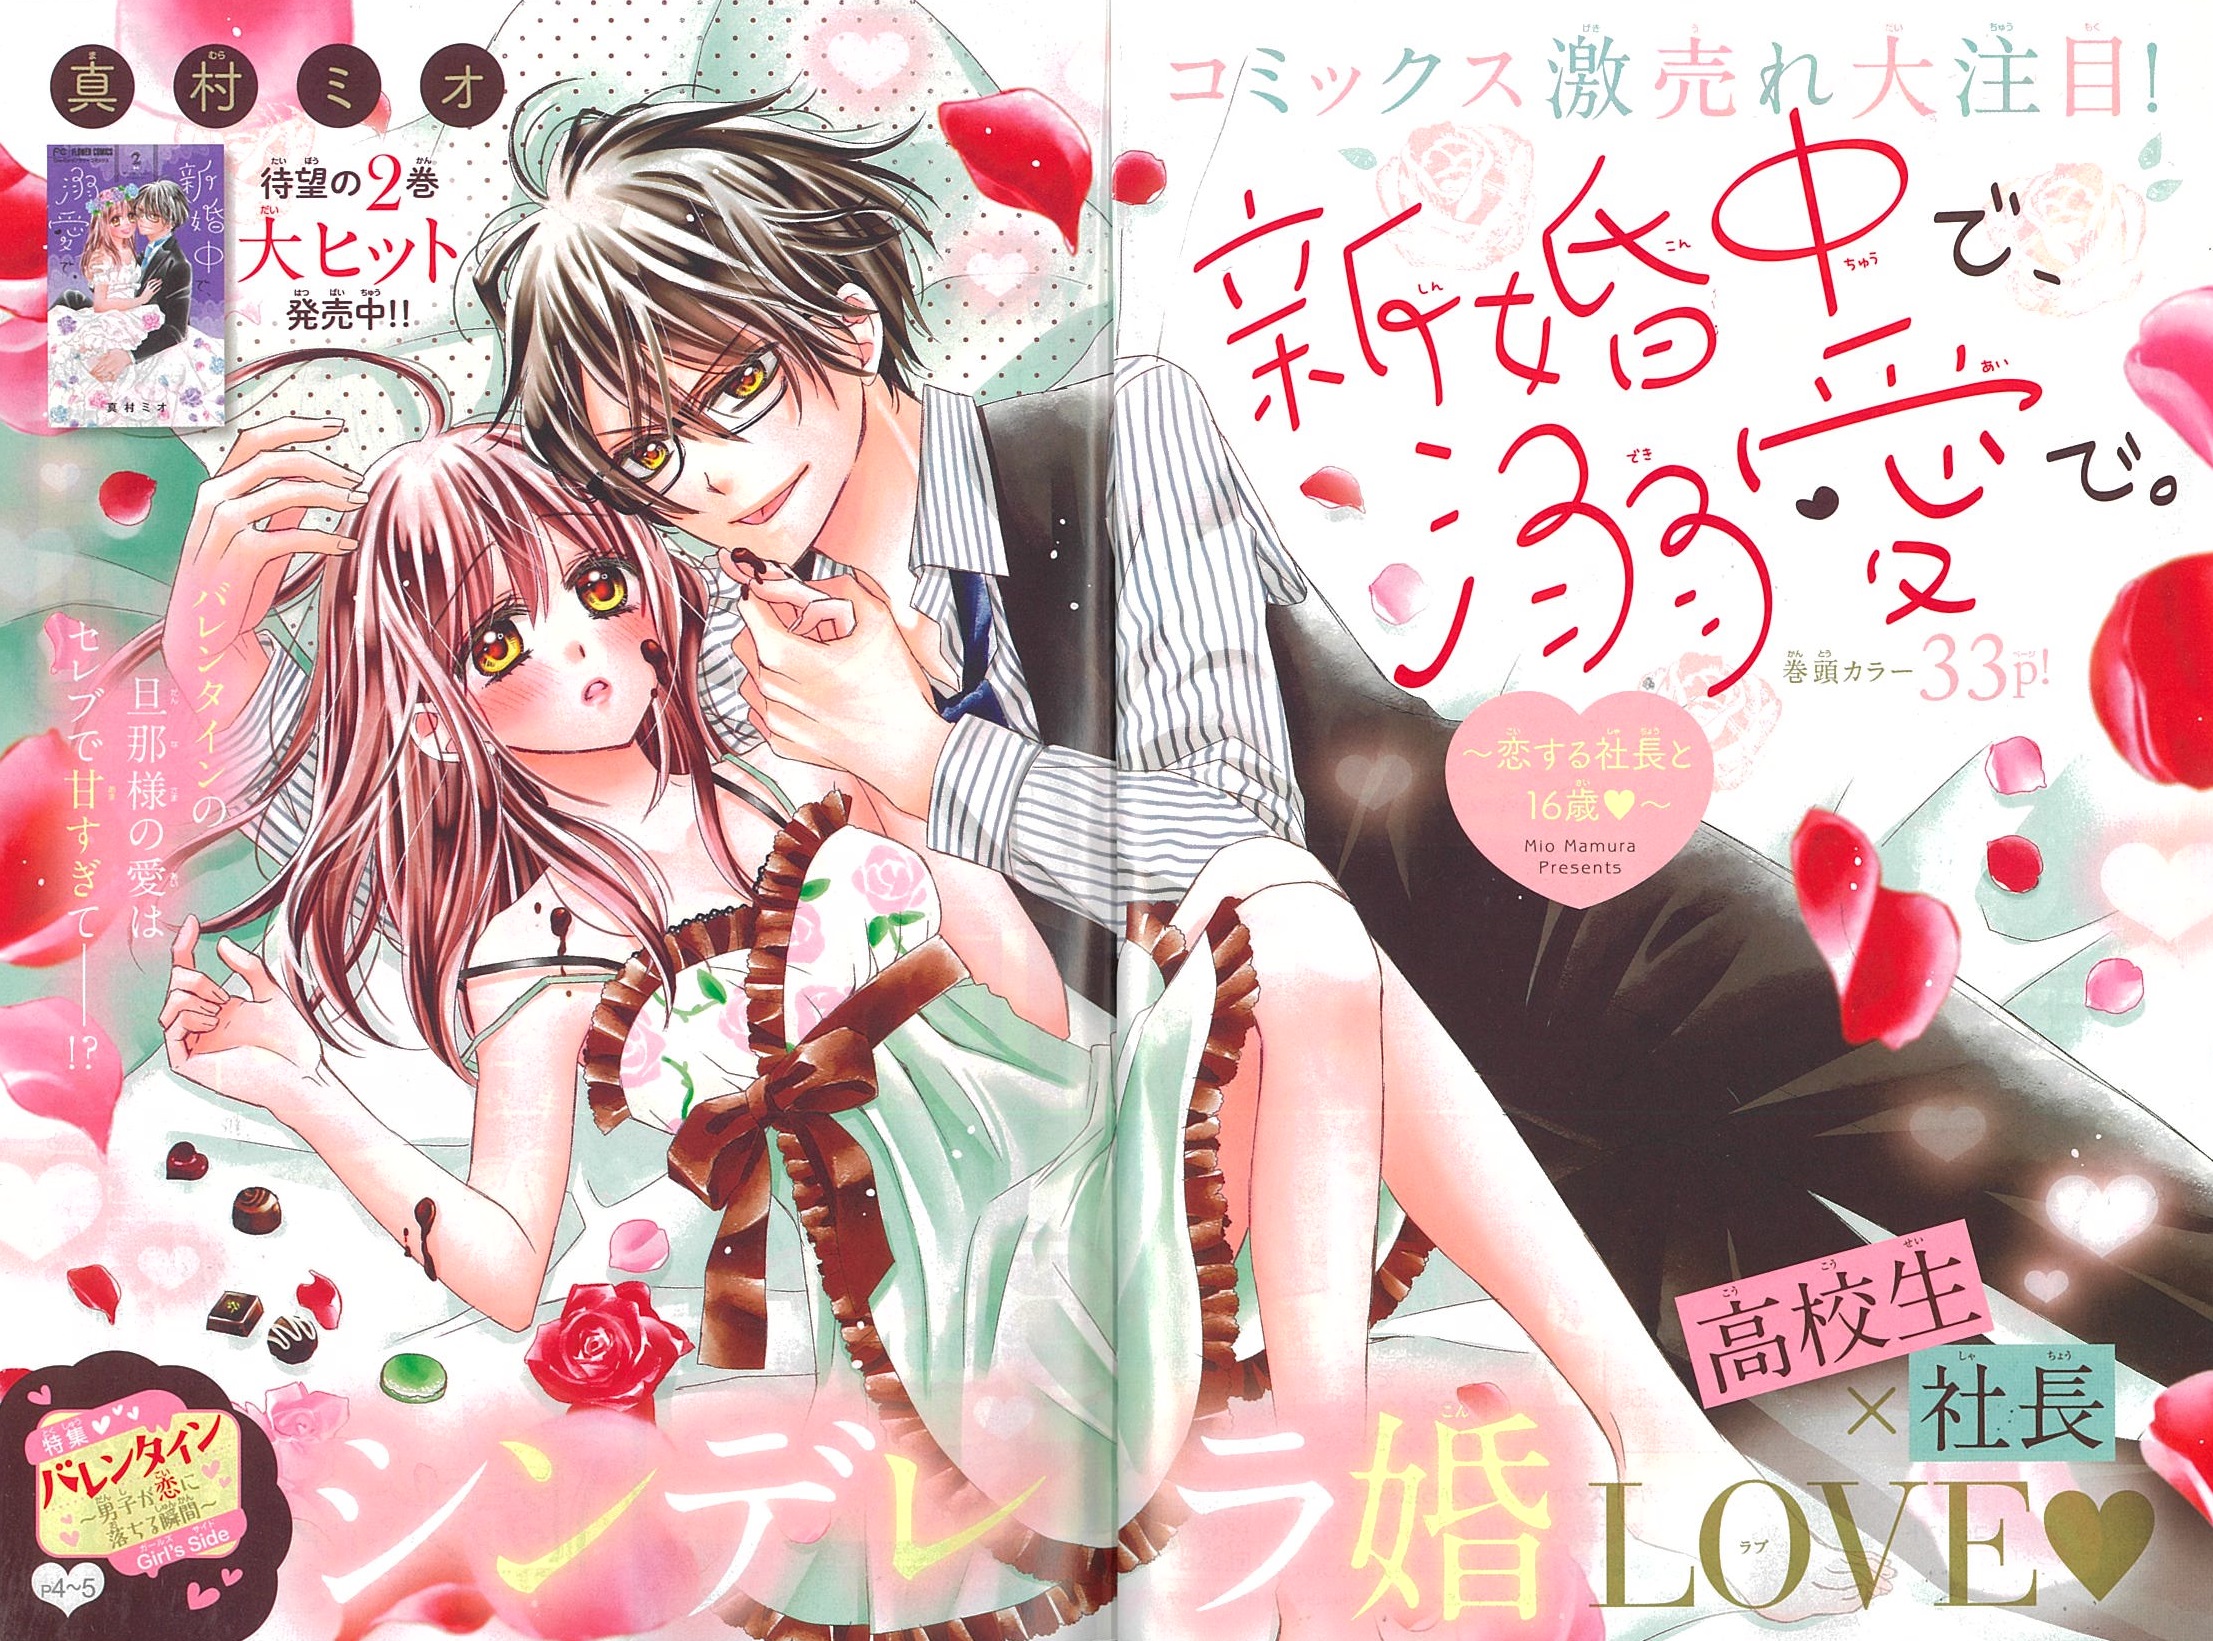 今年はひと味違うバレンタインを 2 14号増刊本日発売 Sho Comiねっと 小学館コミック